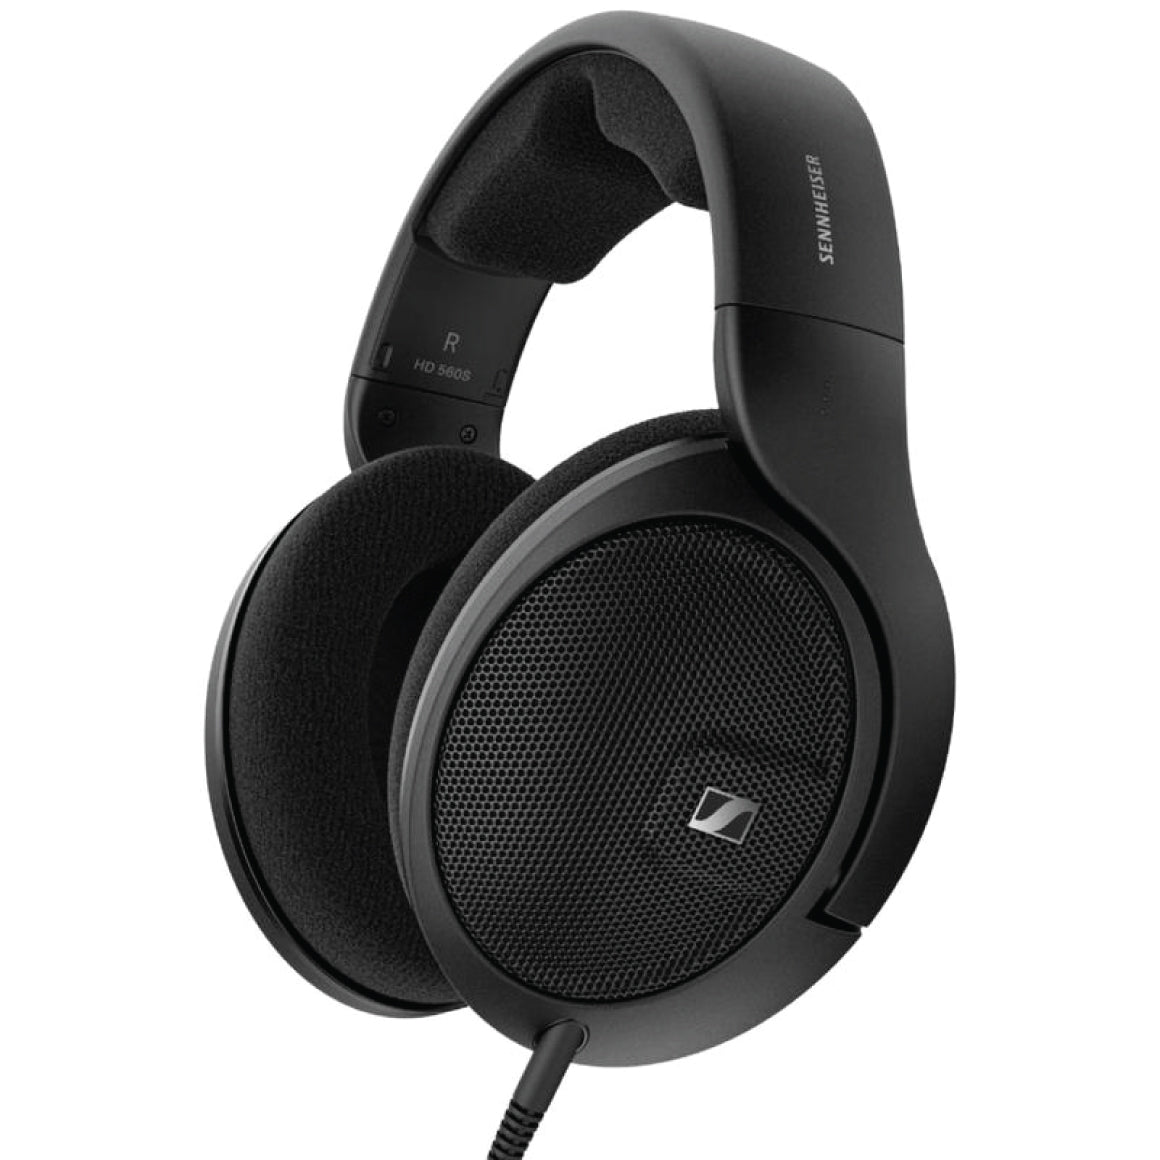 Sennheiser HD 599 SE Review - Decent Headphones But.. 